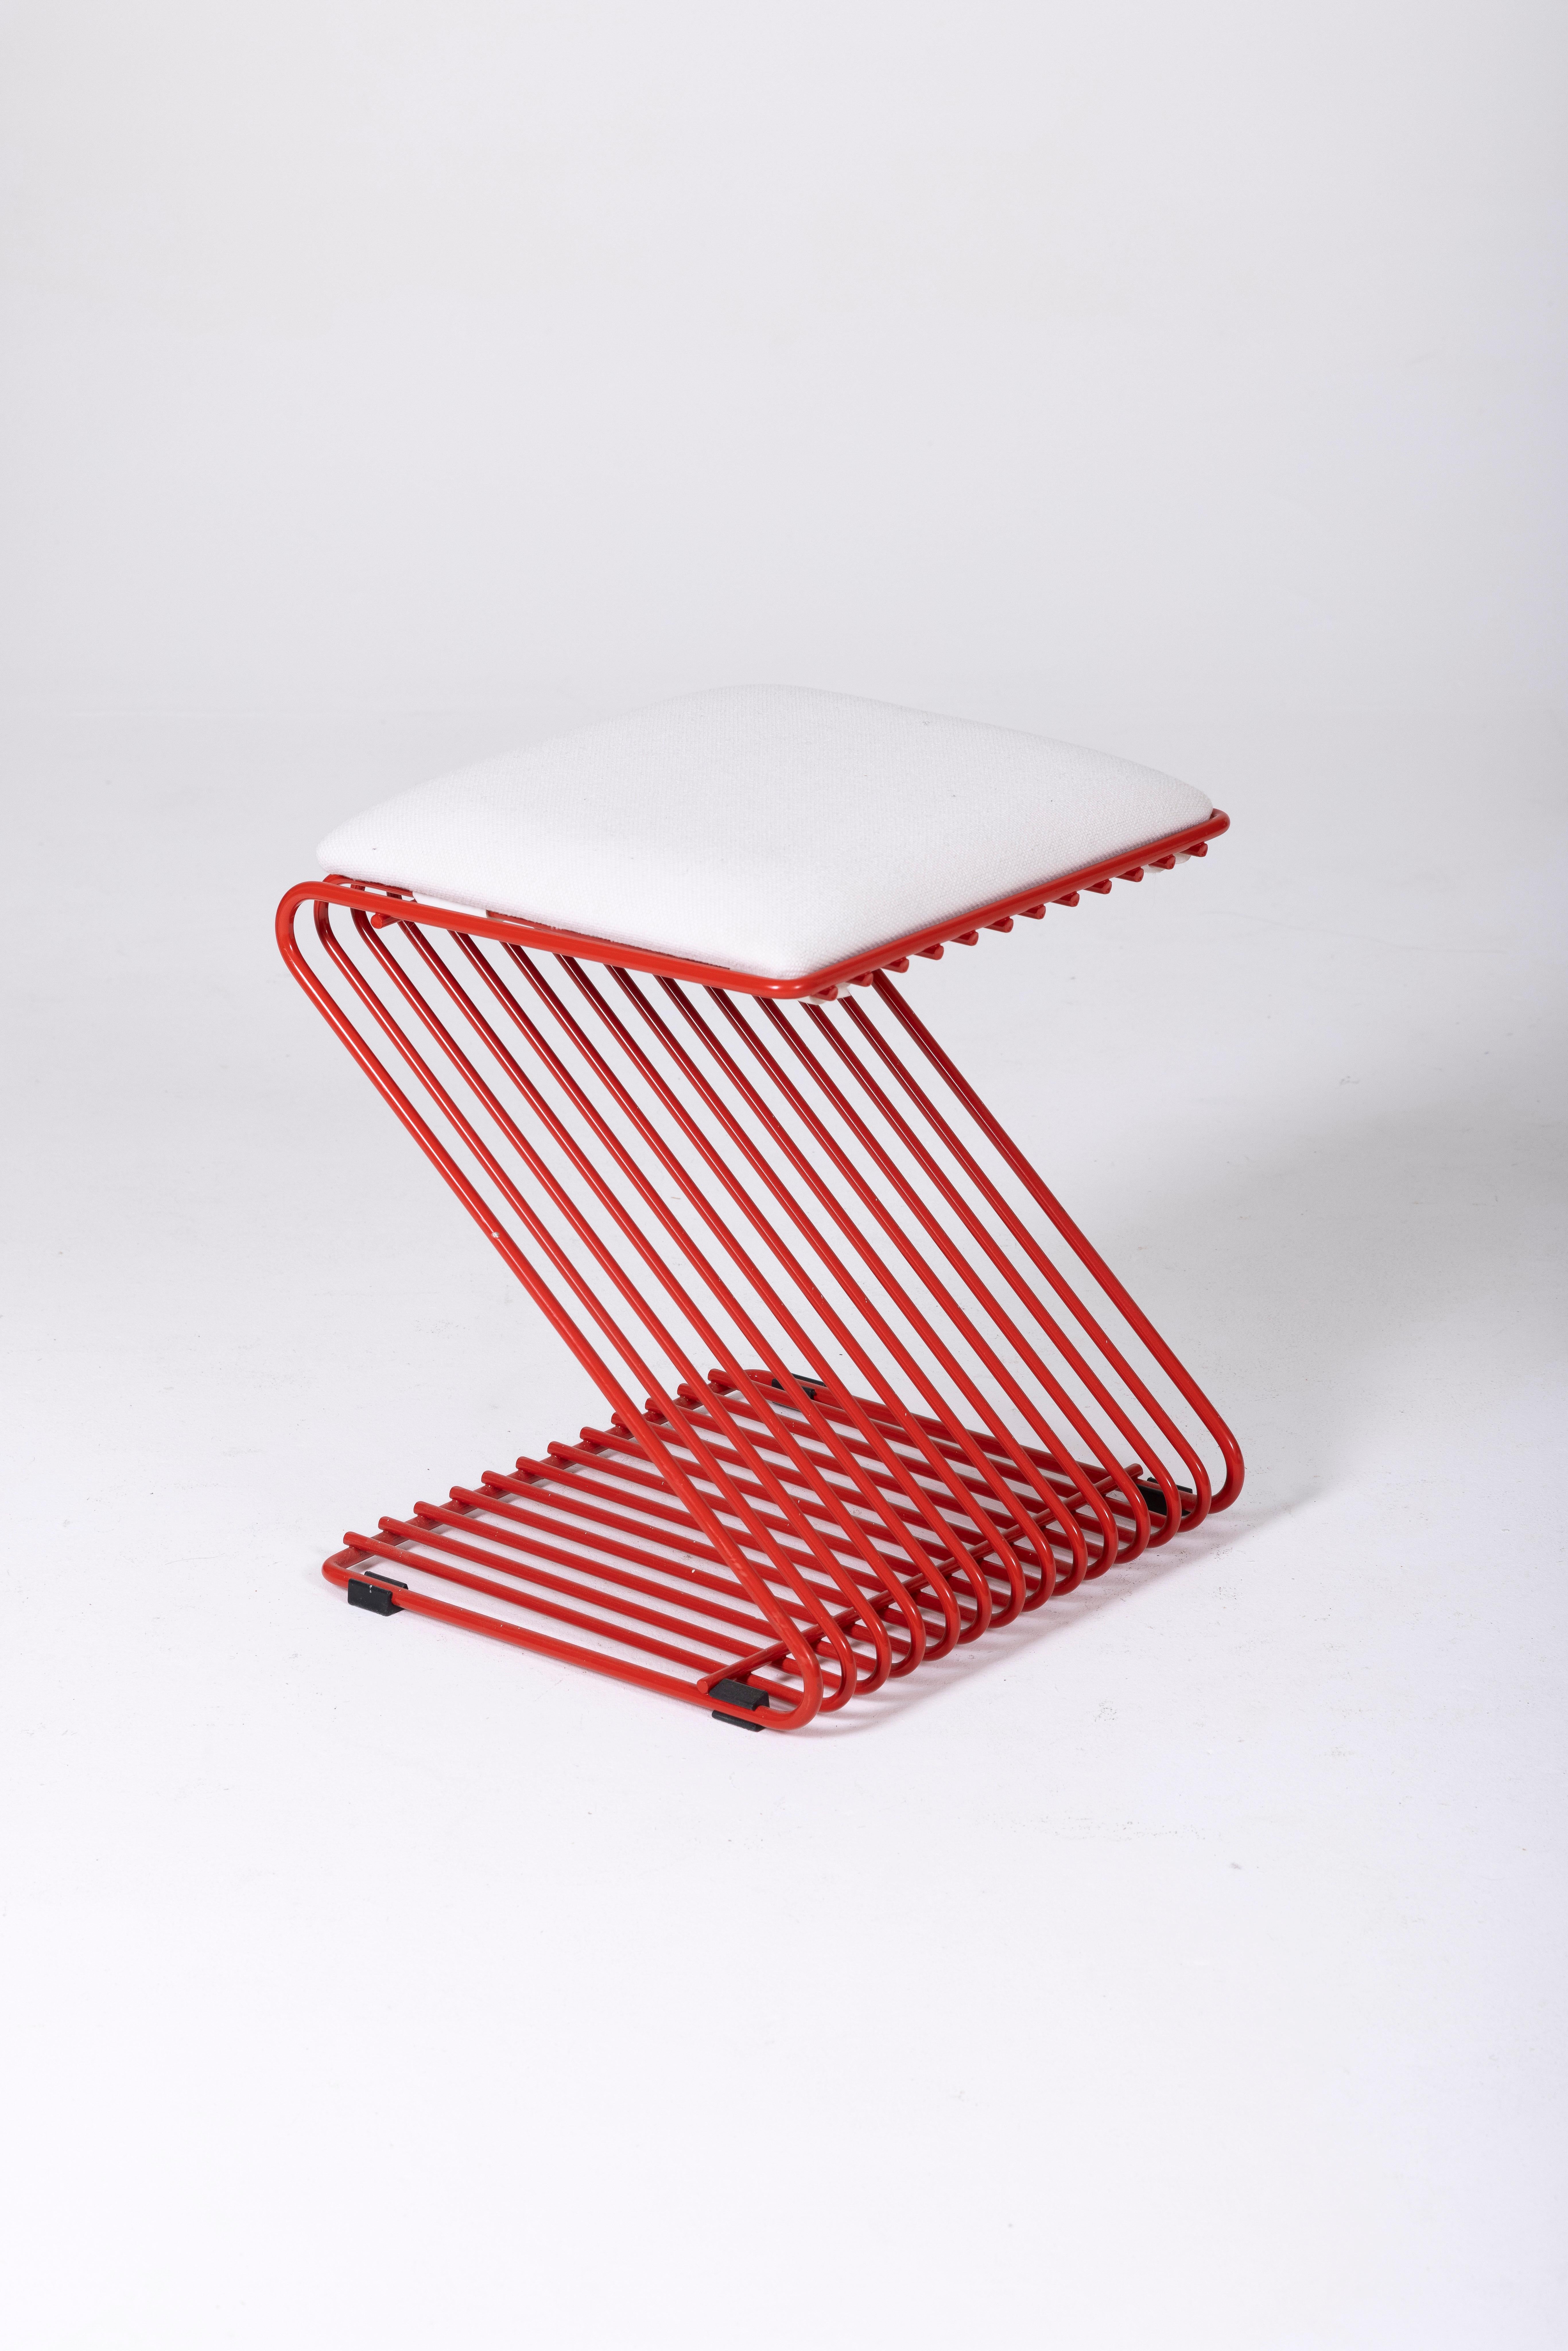 Tabouret Z du designer François Arnal pour Atelier A. Le coussin est en tissu blanc et la structure tubulaire est en métal laqué rouge. En parfait état.
DV65